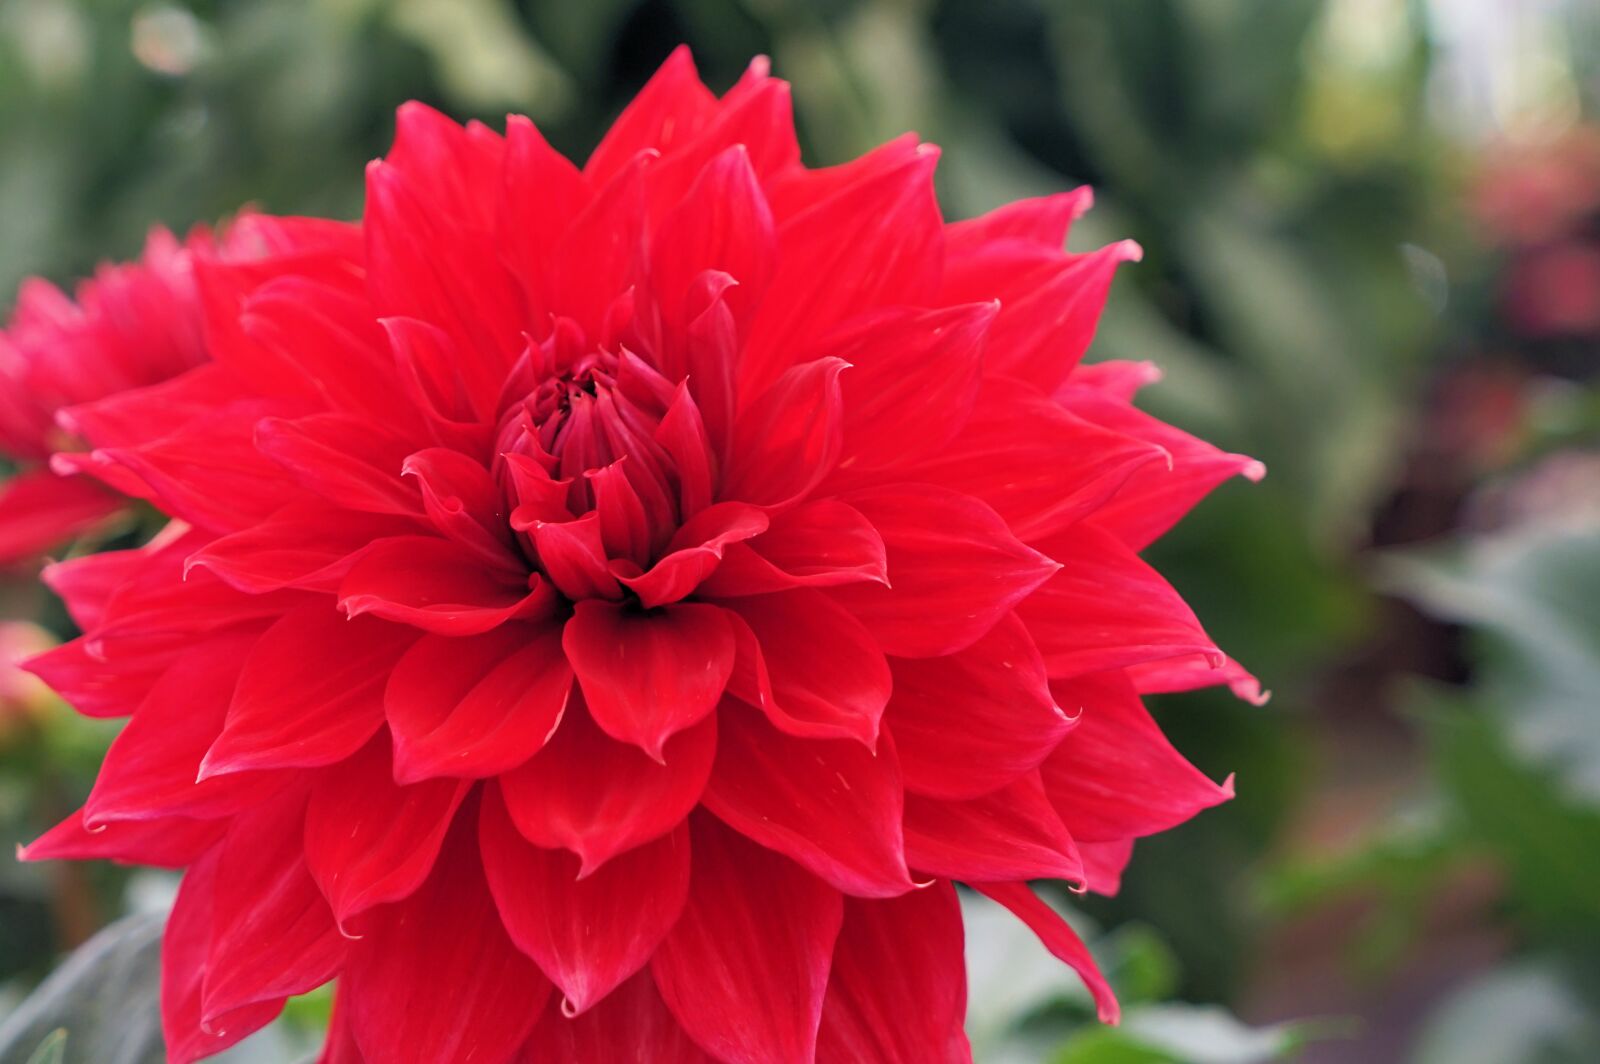 Sony Vario Tessar T* FE 24-70mm F4 ZA OSS sample photo. Flower, red flower, blossom photography